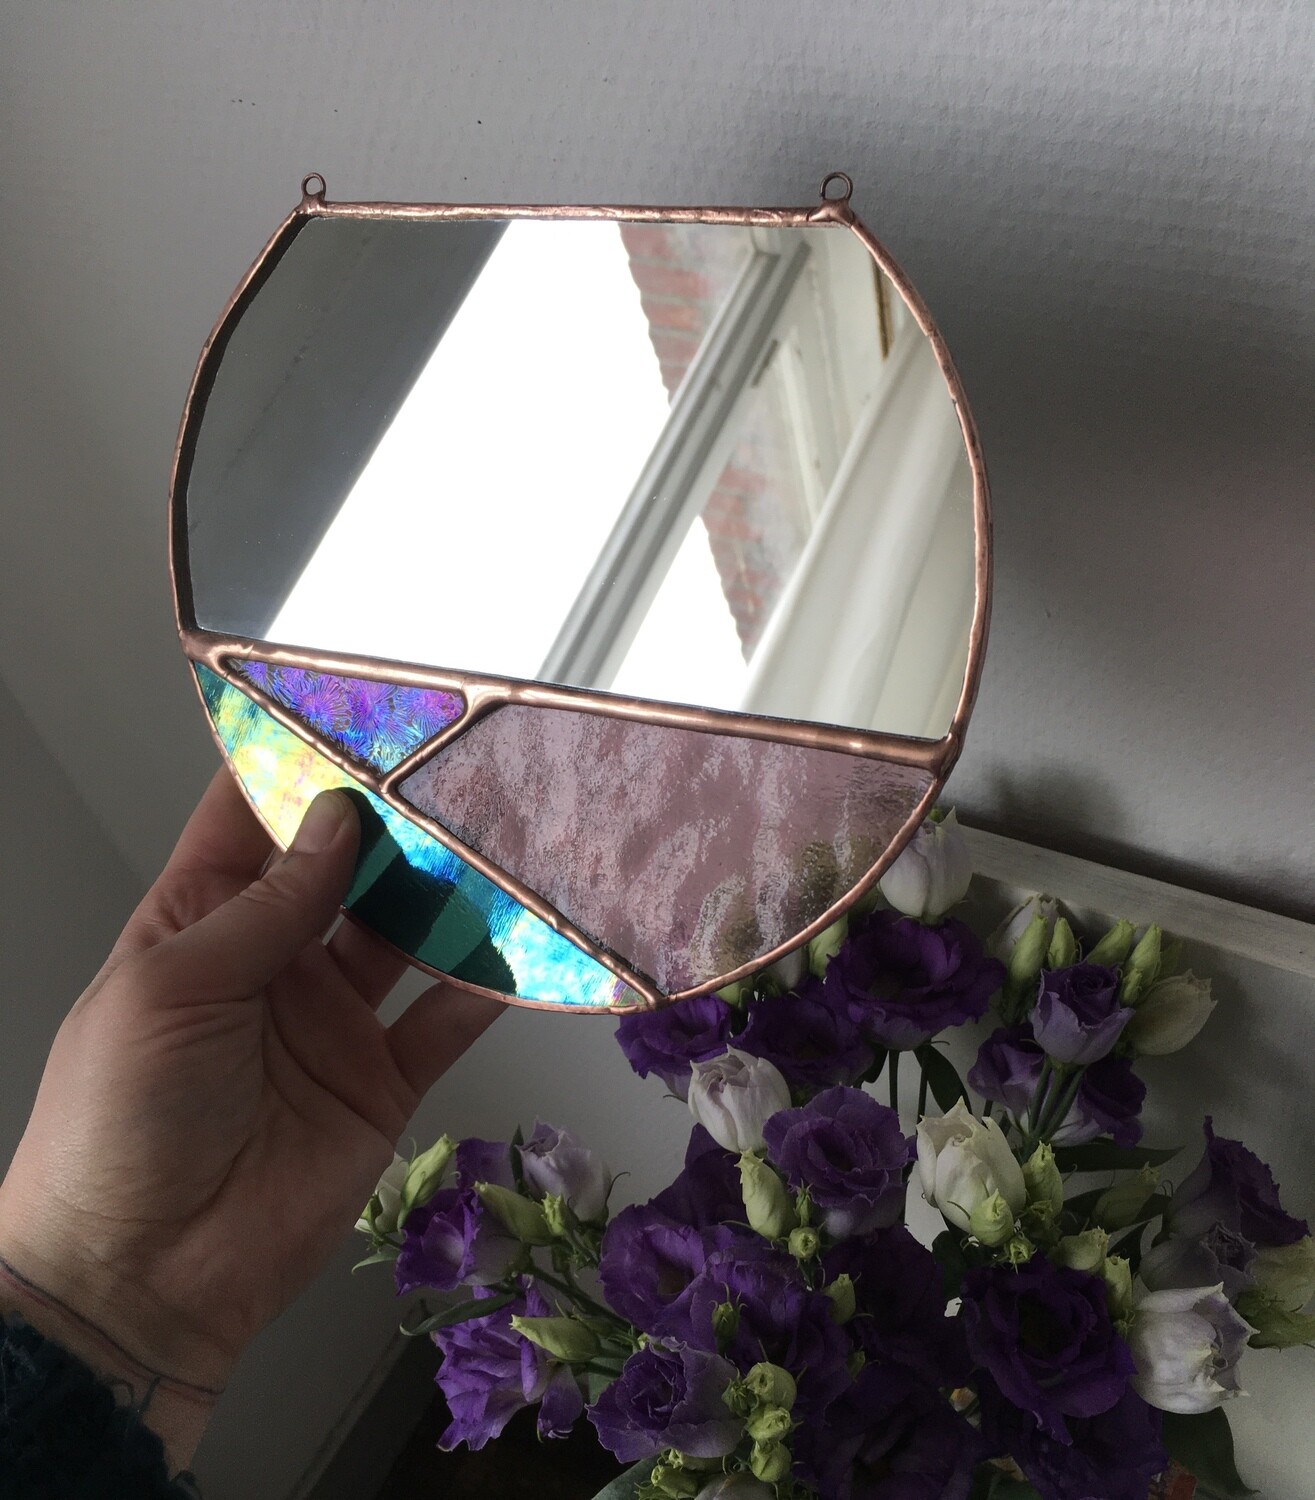 ‘Minimalistic mirror’
Pink - green